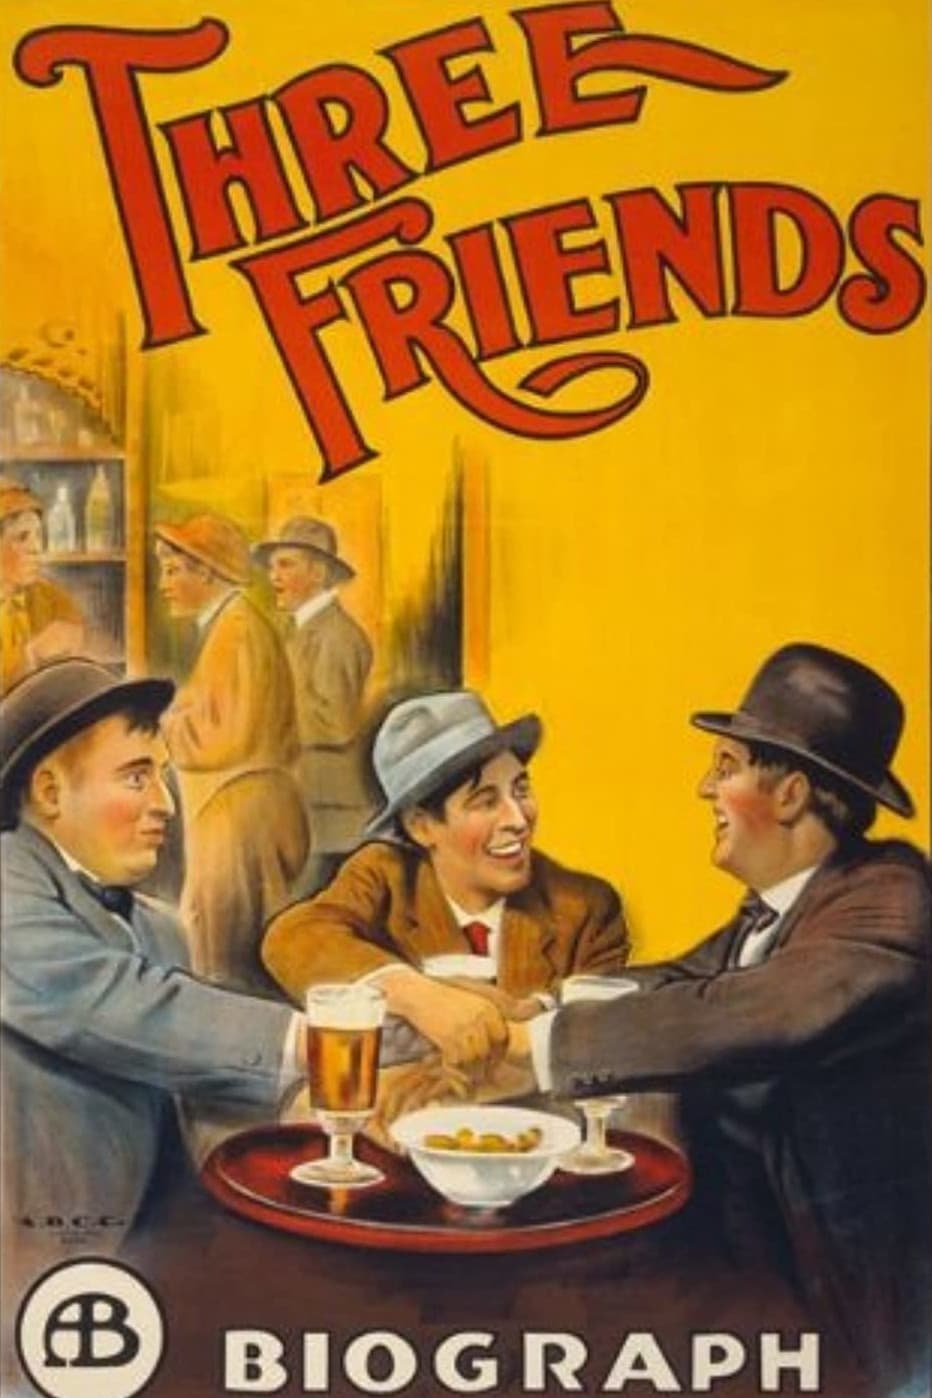 Three Friends